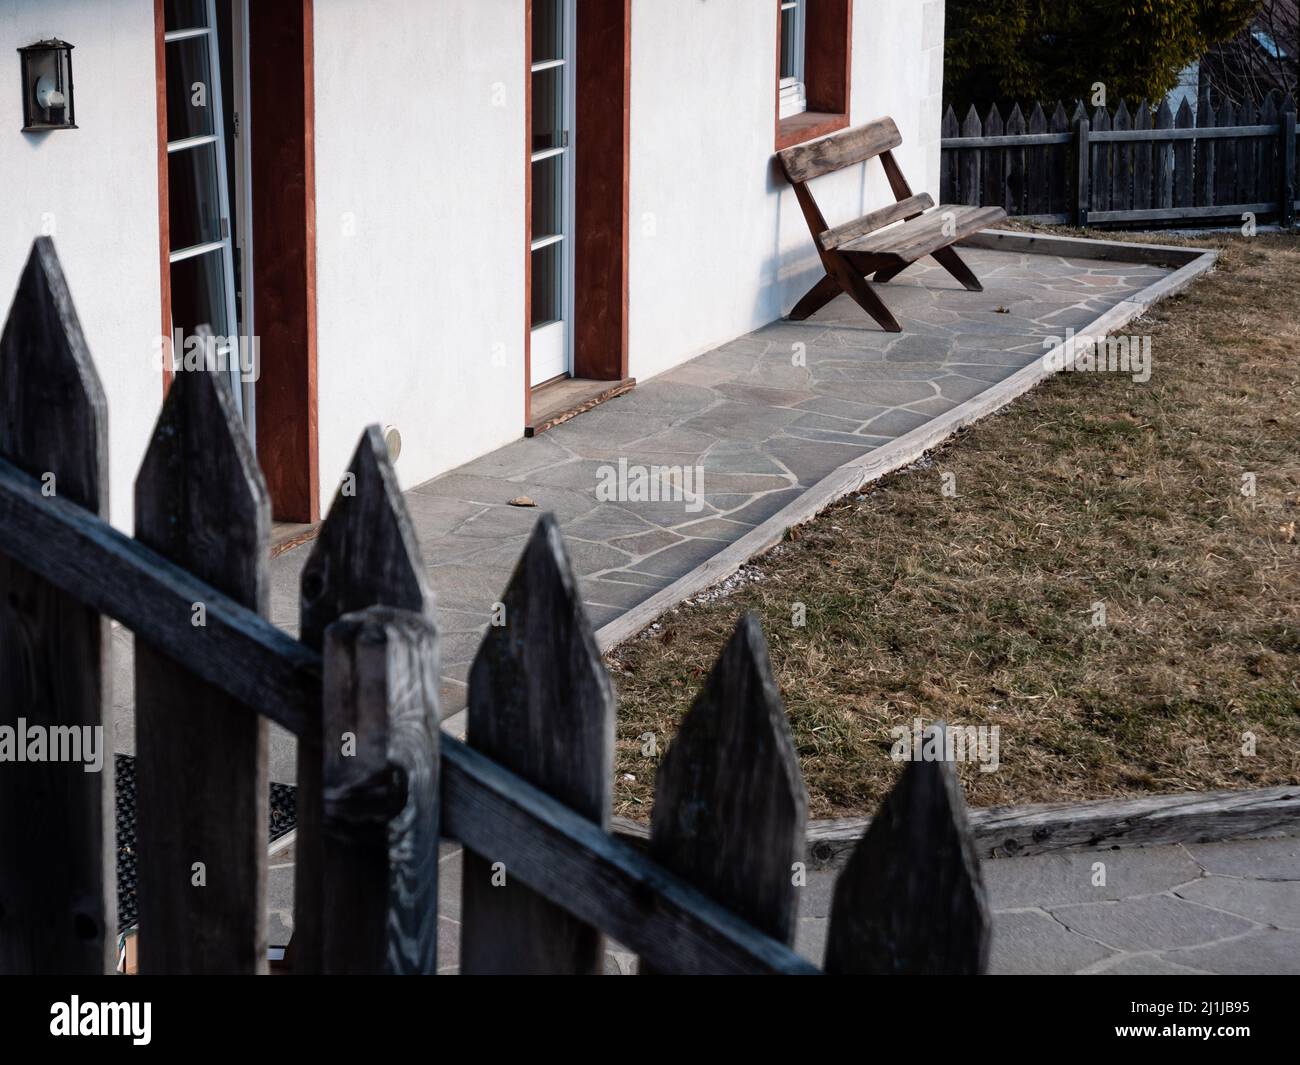 Banc en bois devant une maison dans un jardin à Cortina d'Ampezzo, Italie Banque D'Images